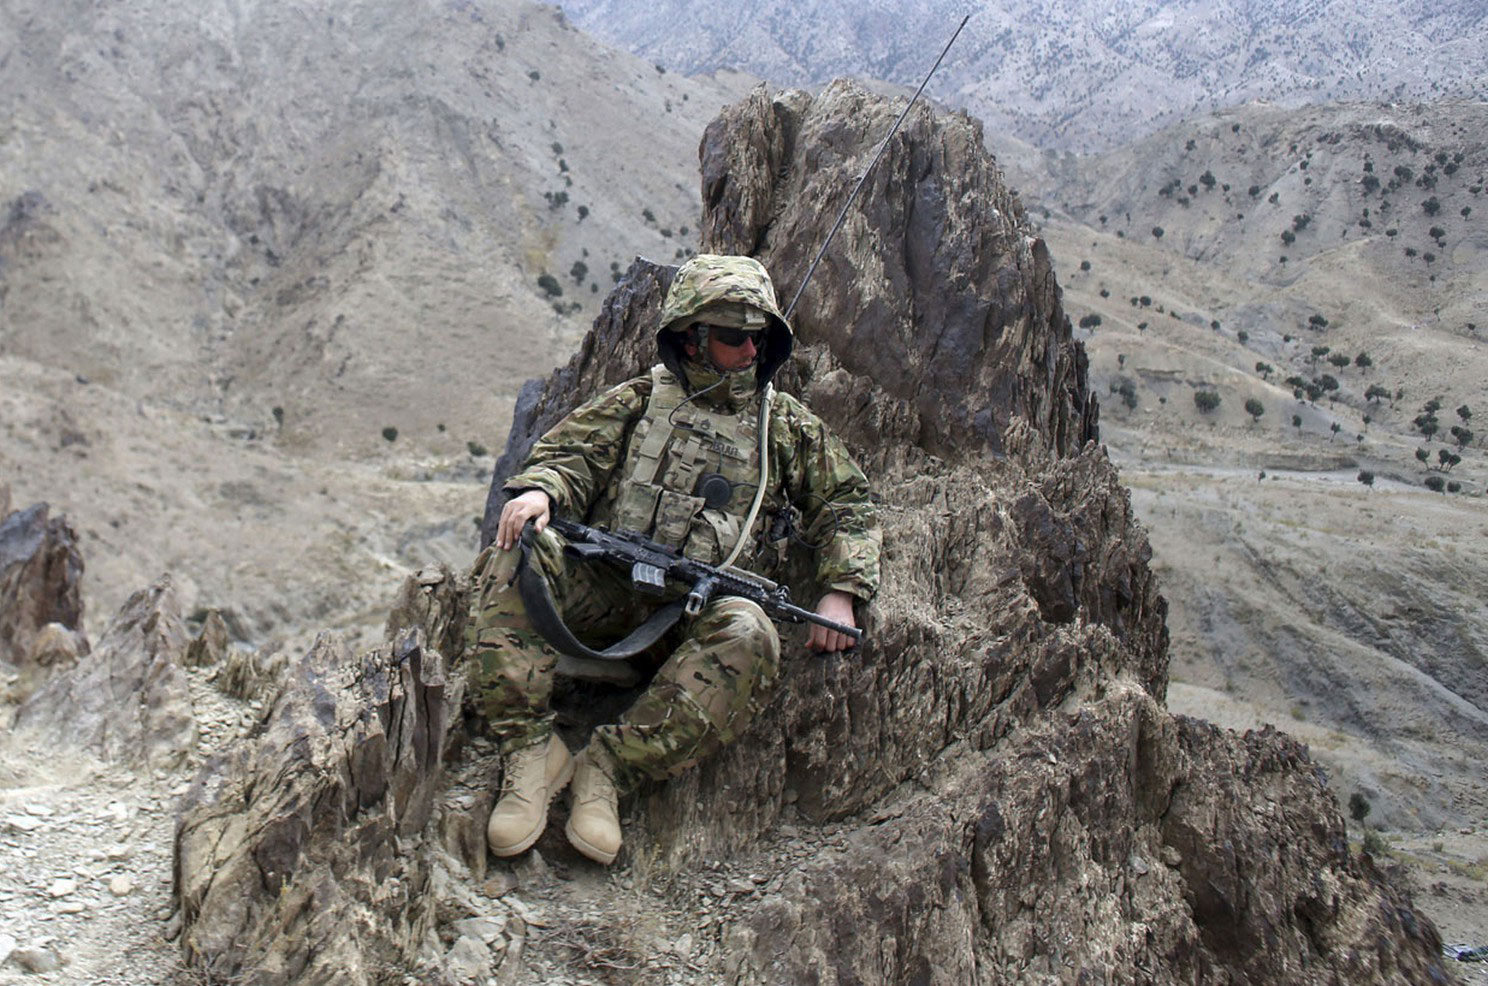 солдат США в засаде, фото из Афганистана